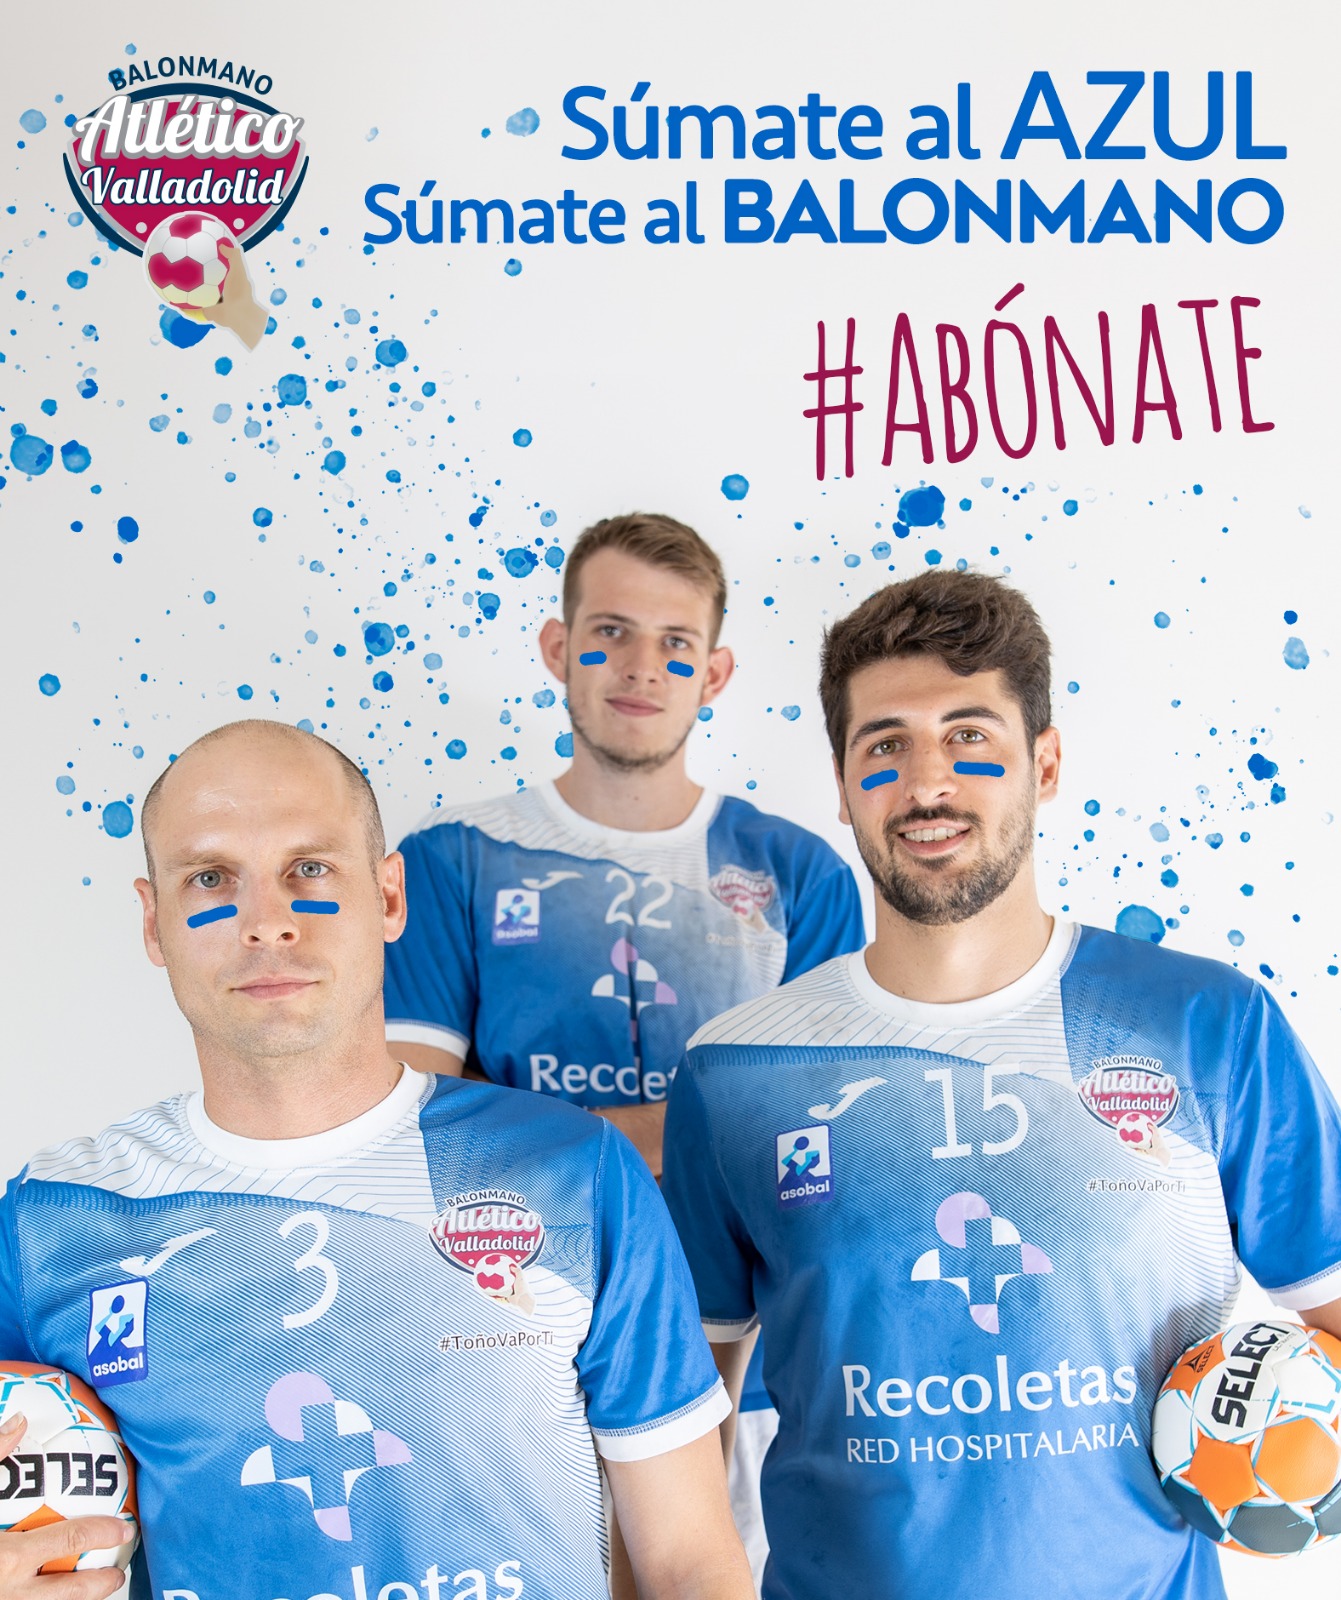 ¡Súmate al azul’, súmate al balonmano con el Recoletas Atlético Valladolid